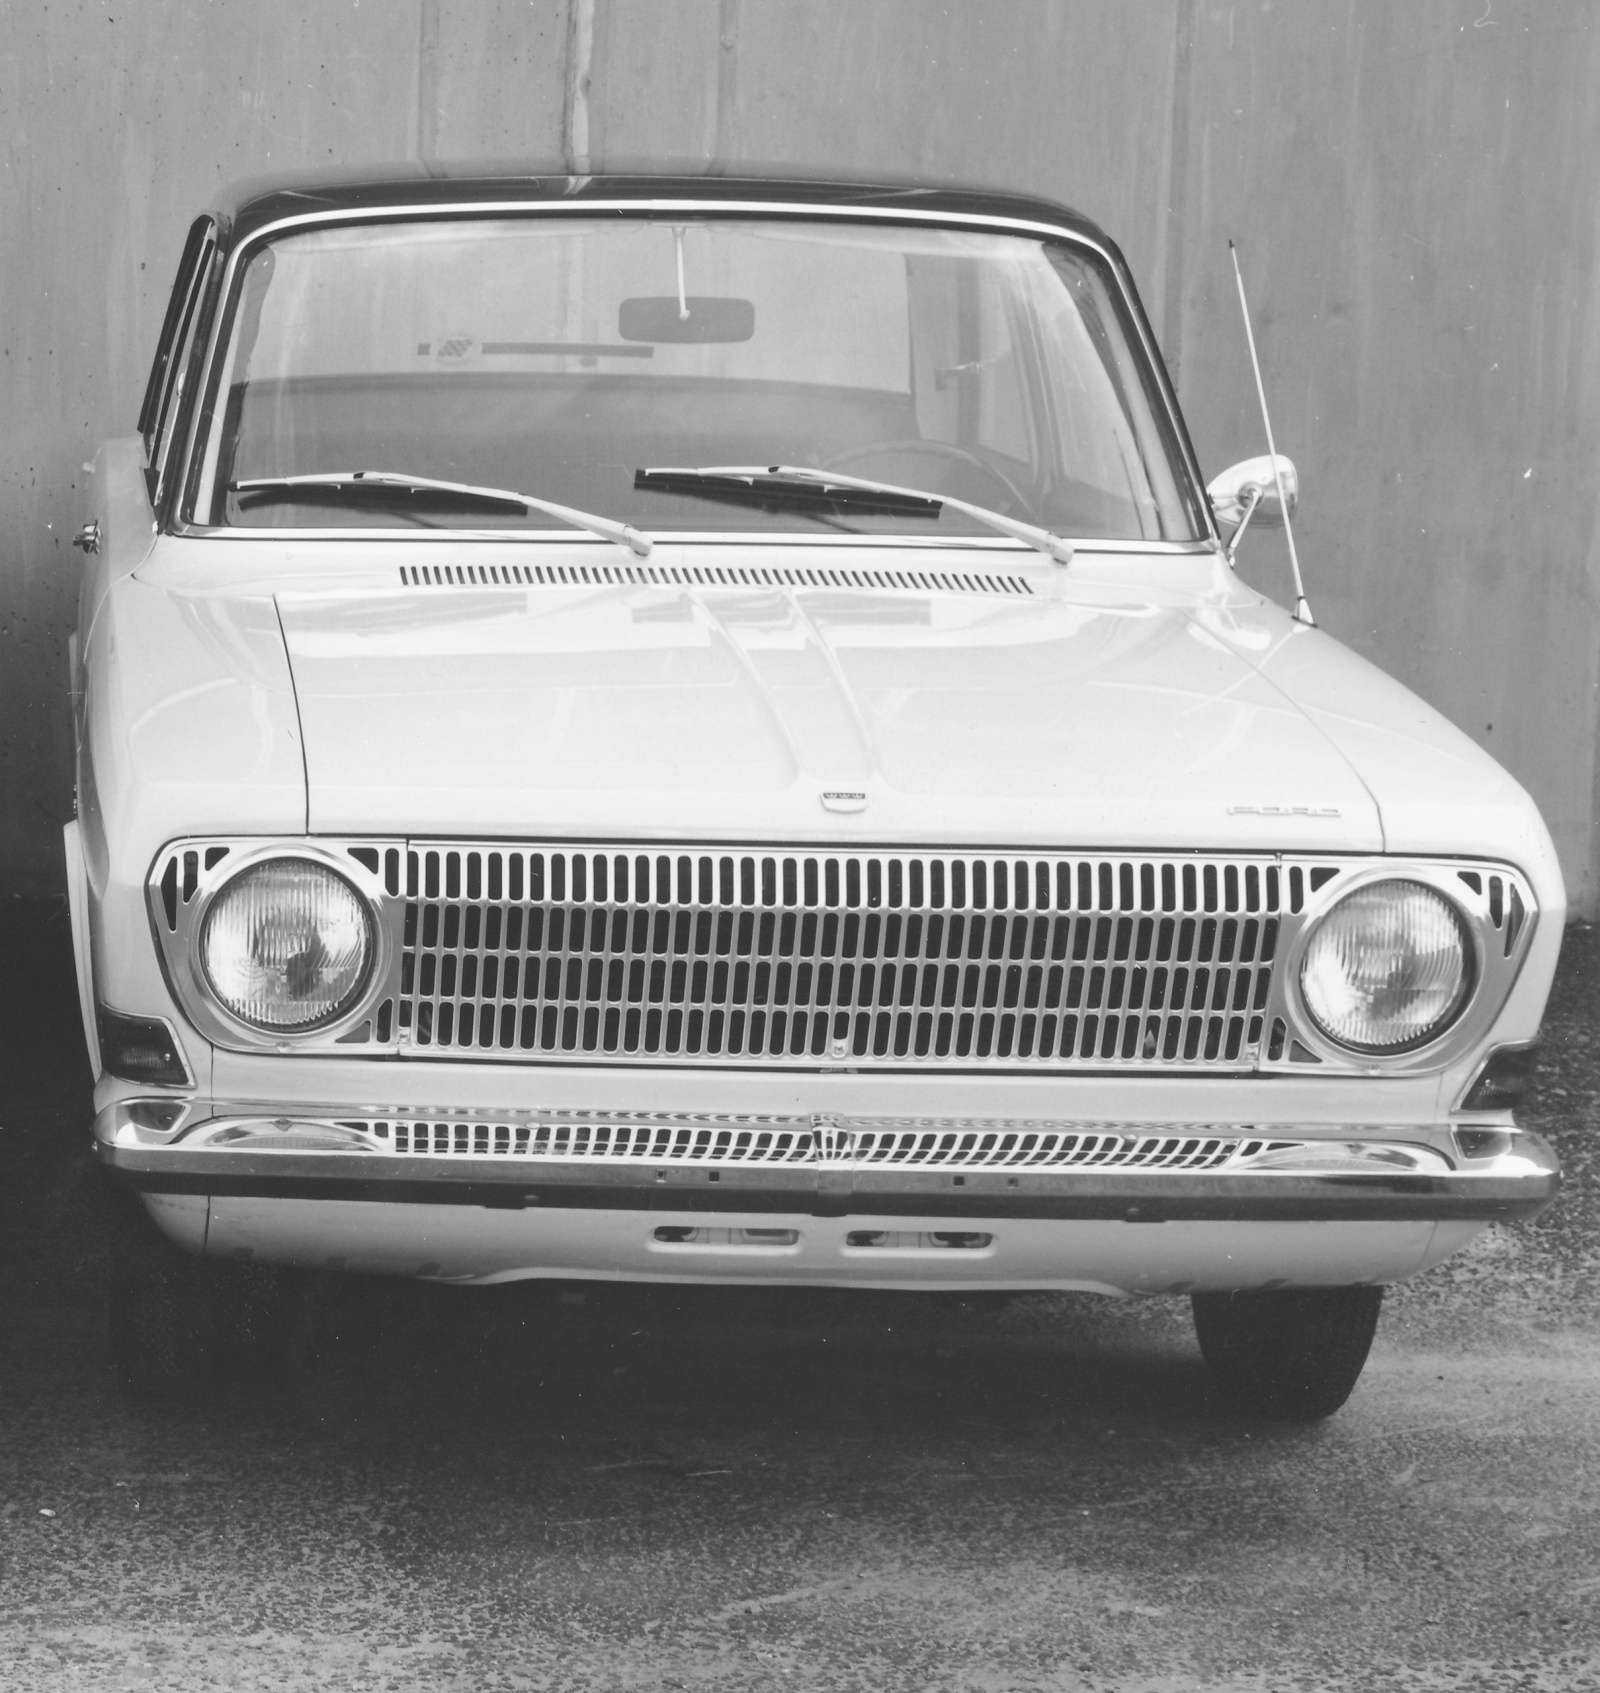 Ford 12m (1967) - Foto eines Ford PKW-Modells